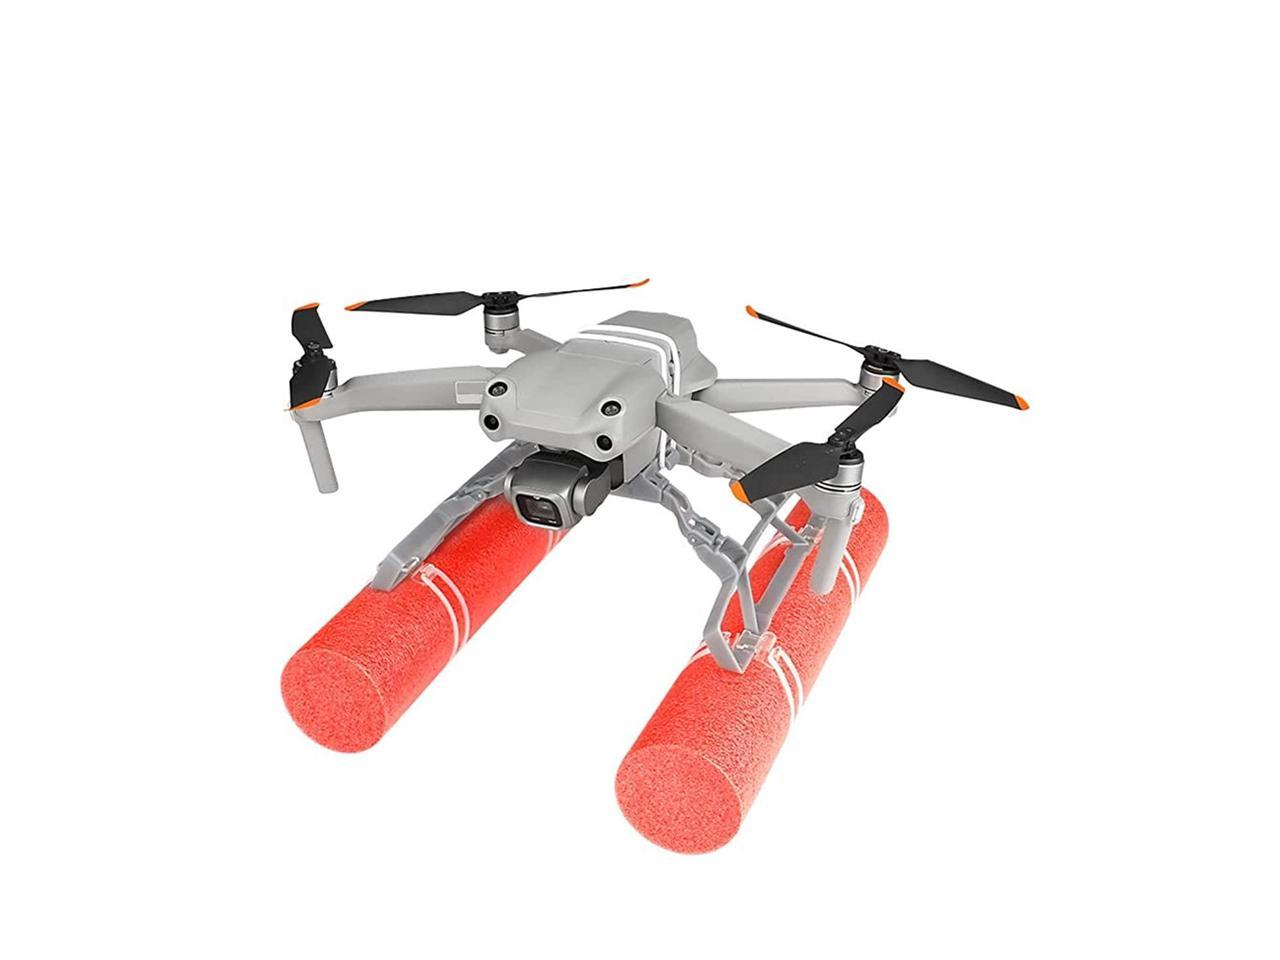 Mavic Mini/Mini 2 Drone Float Landing Gear,Water Extender Landing Leg Compatible with DJI Mavic Mini/Mini 2 